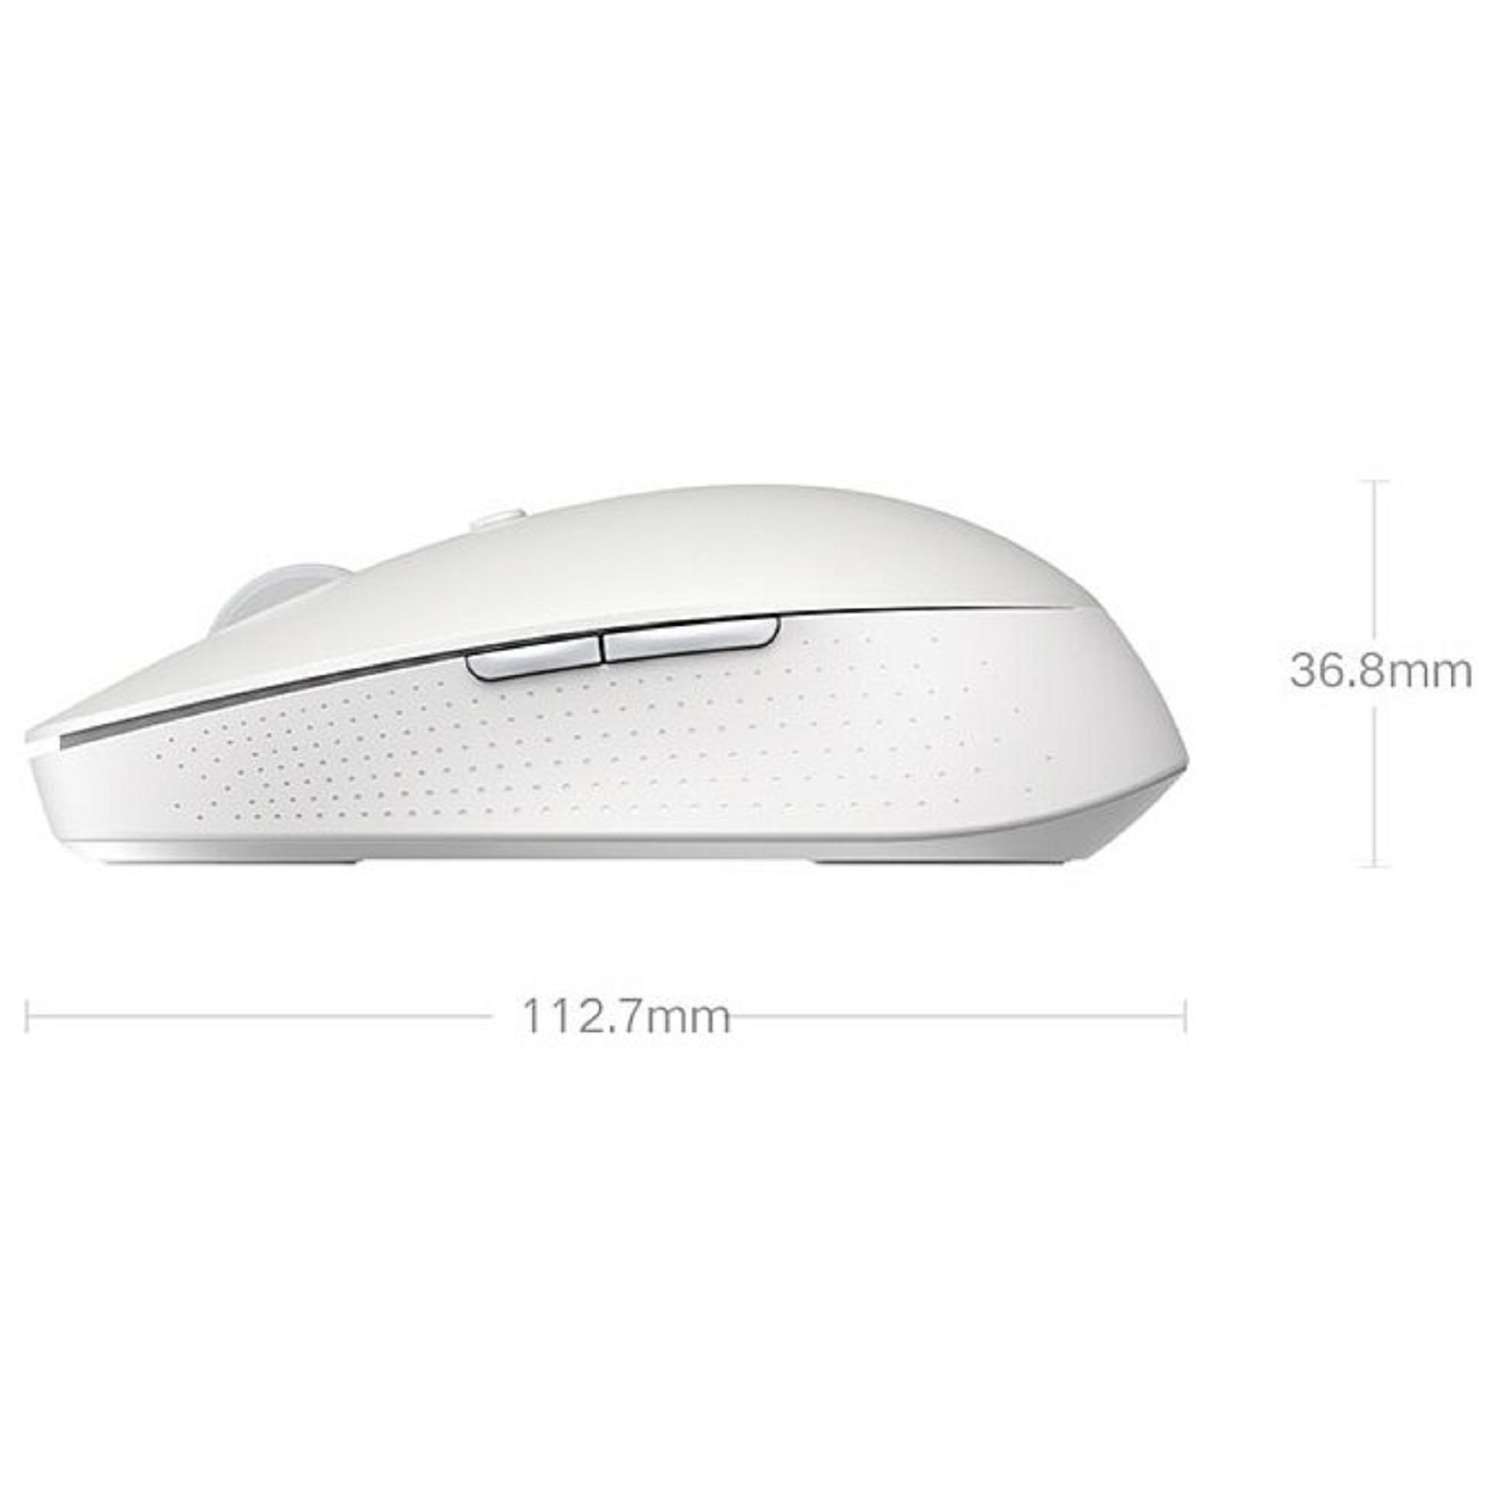 Мышь XIAOMI Mi Dual Mode Wireless Mouse Silent Edition беспроводная 1300 dpi usb белая - фото 7